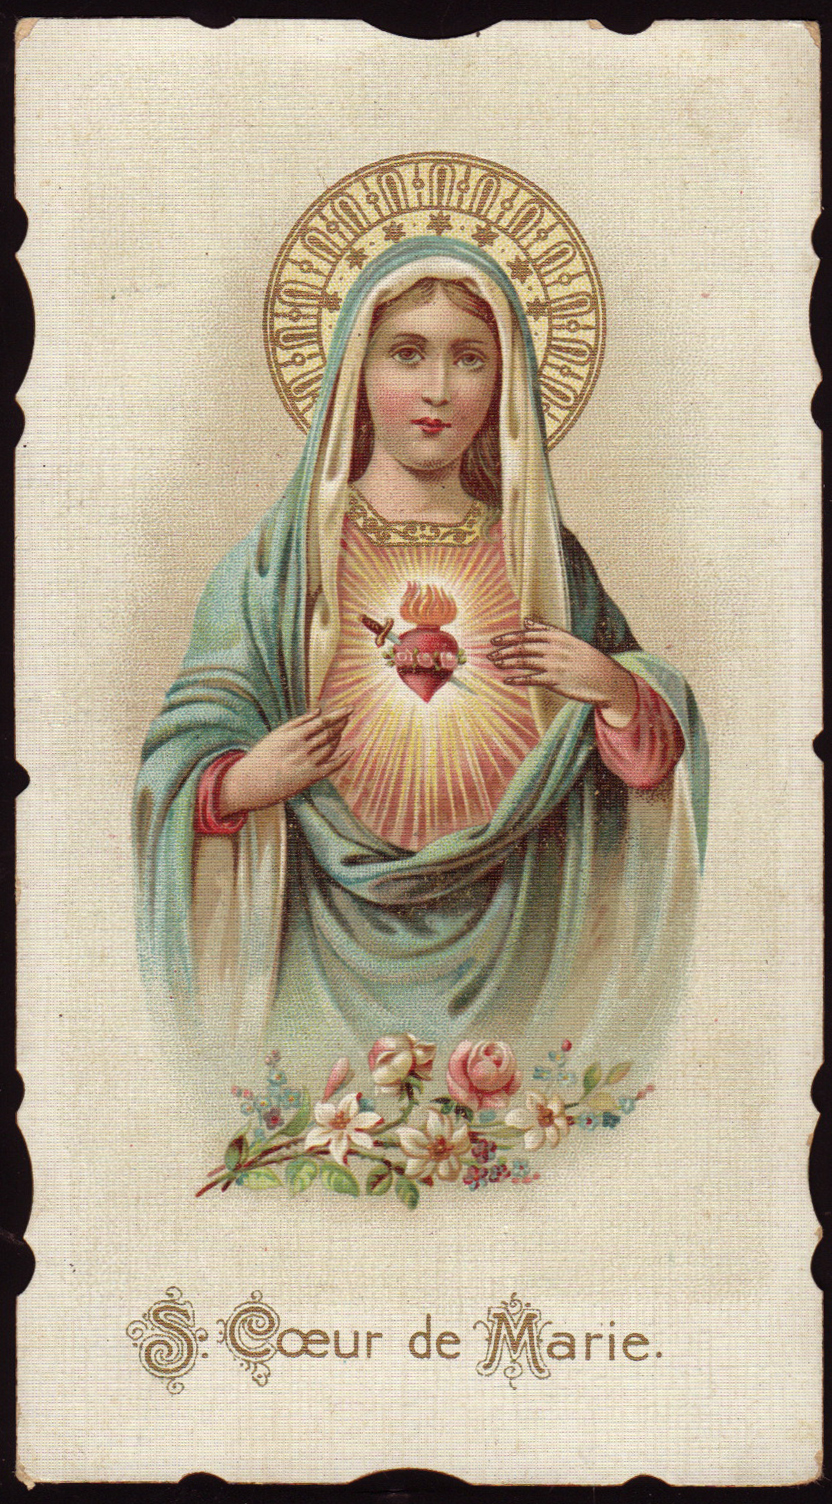 Sweet Heart of Mary